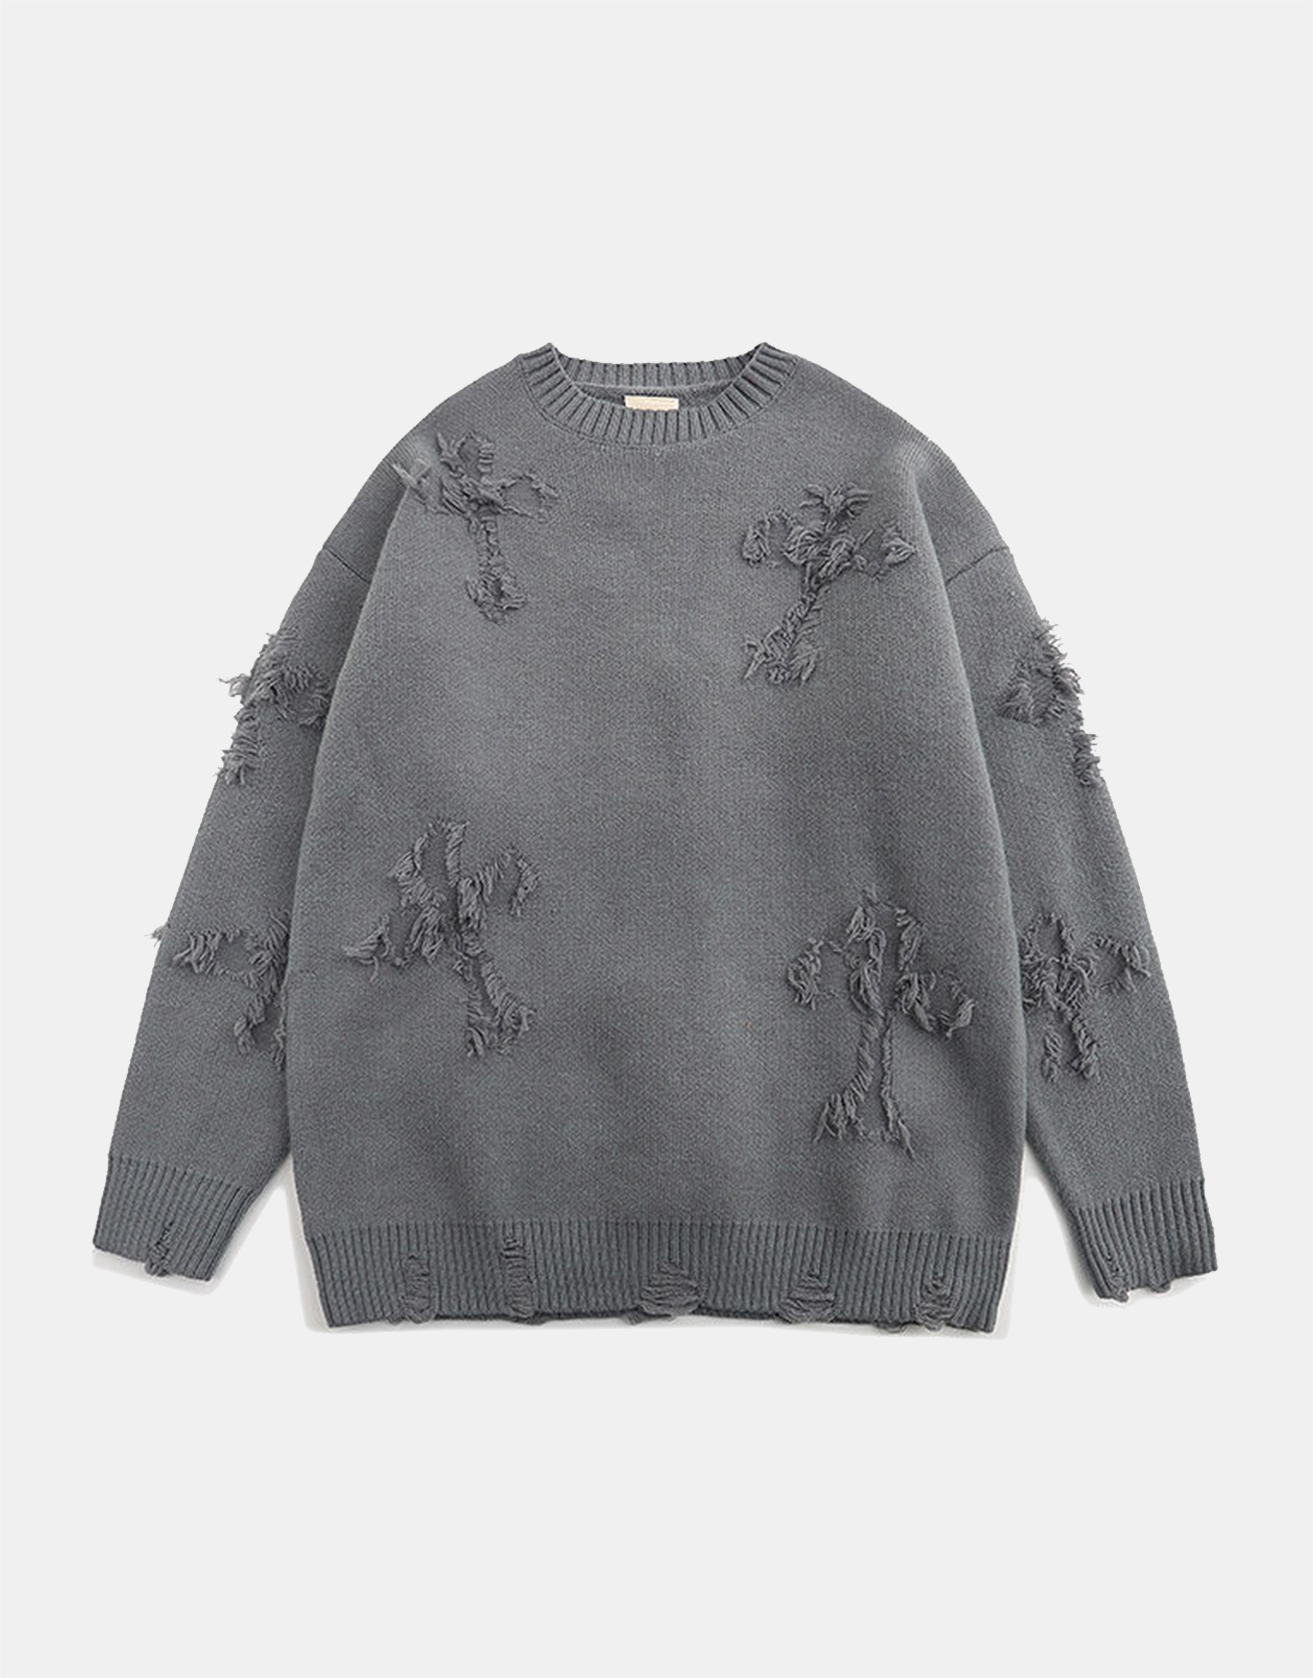 Cross Hole Street Trendy Sweater / TECHWEAR CLUB / Techwear